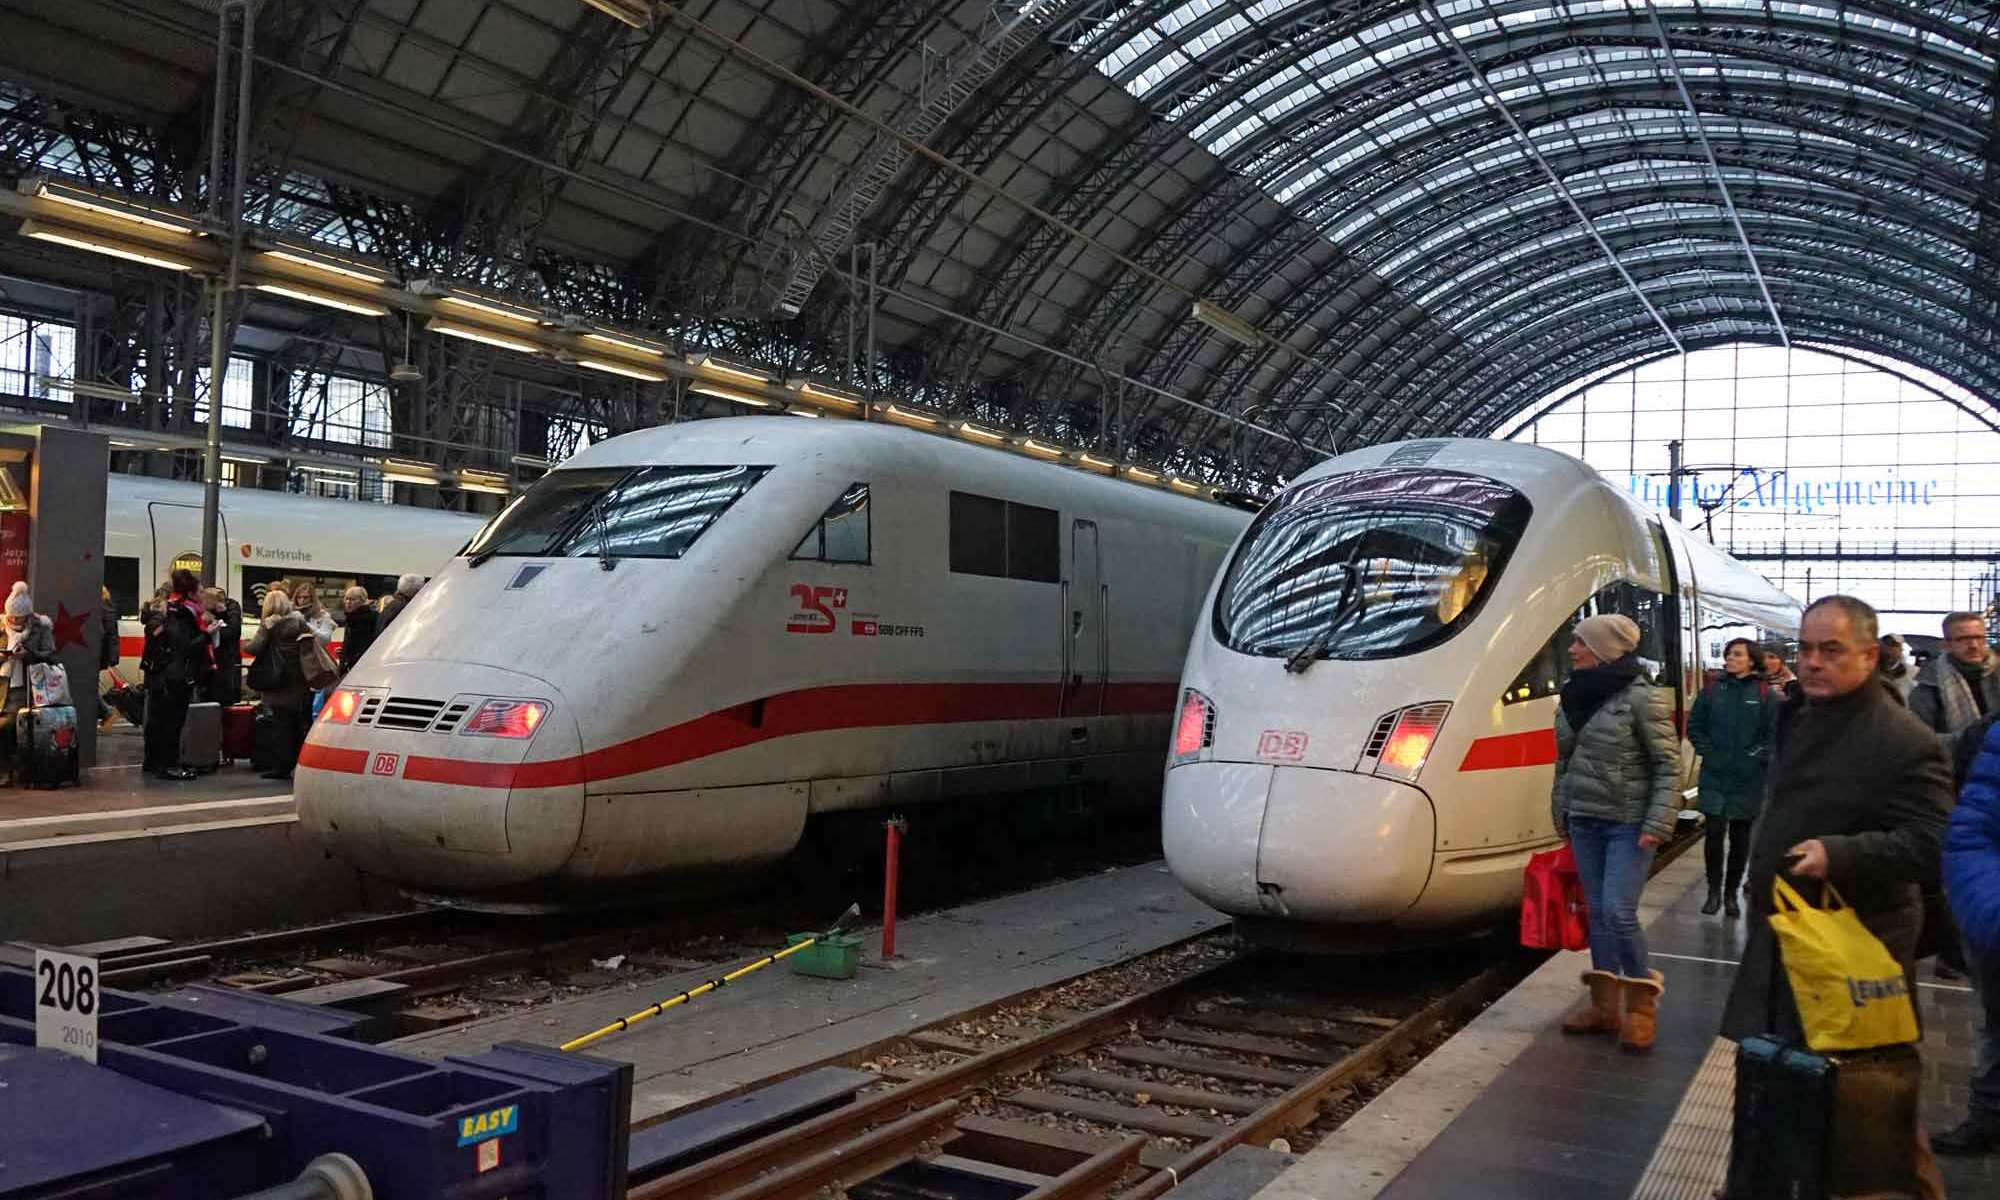 Volle Bahnsteige in Frankfurt (Main) Hbf: Nach einem Wintereinbruch am 10. Dezember 2017 kam es zu massiven Verspätungen im Bahnverkehr